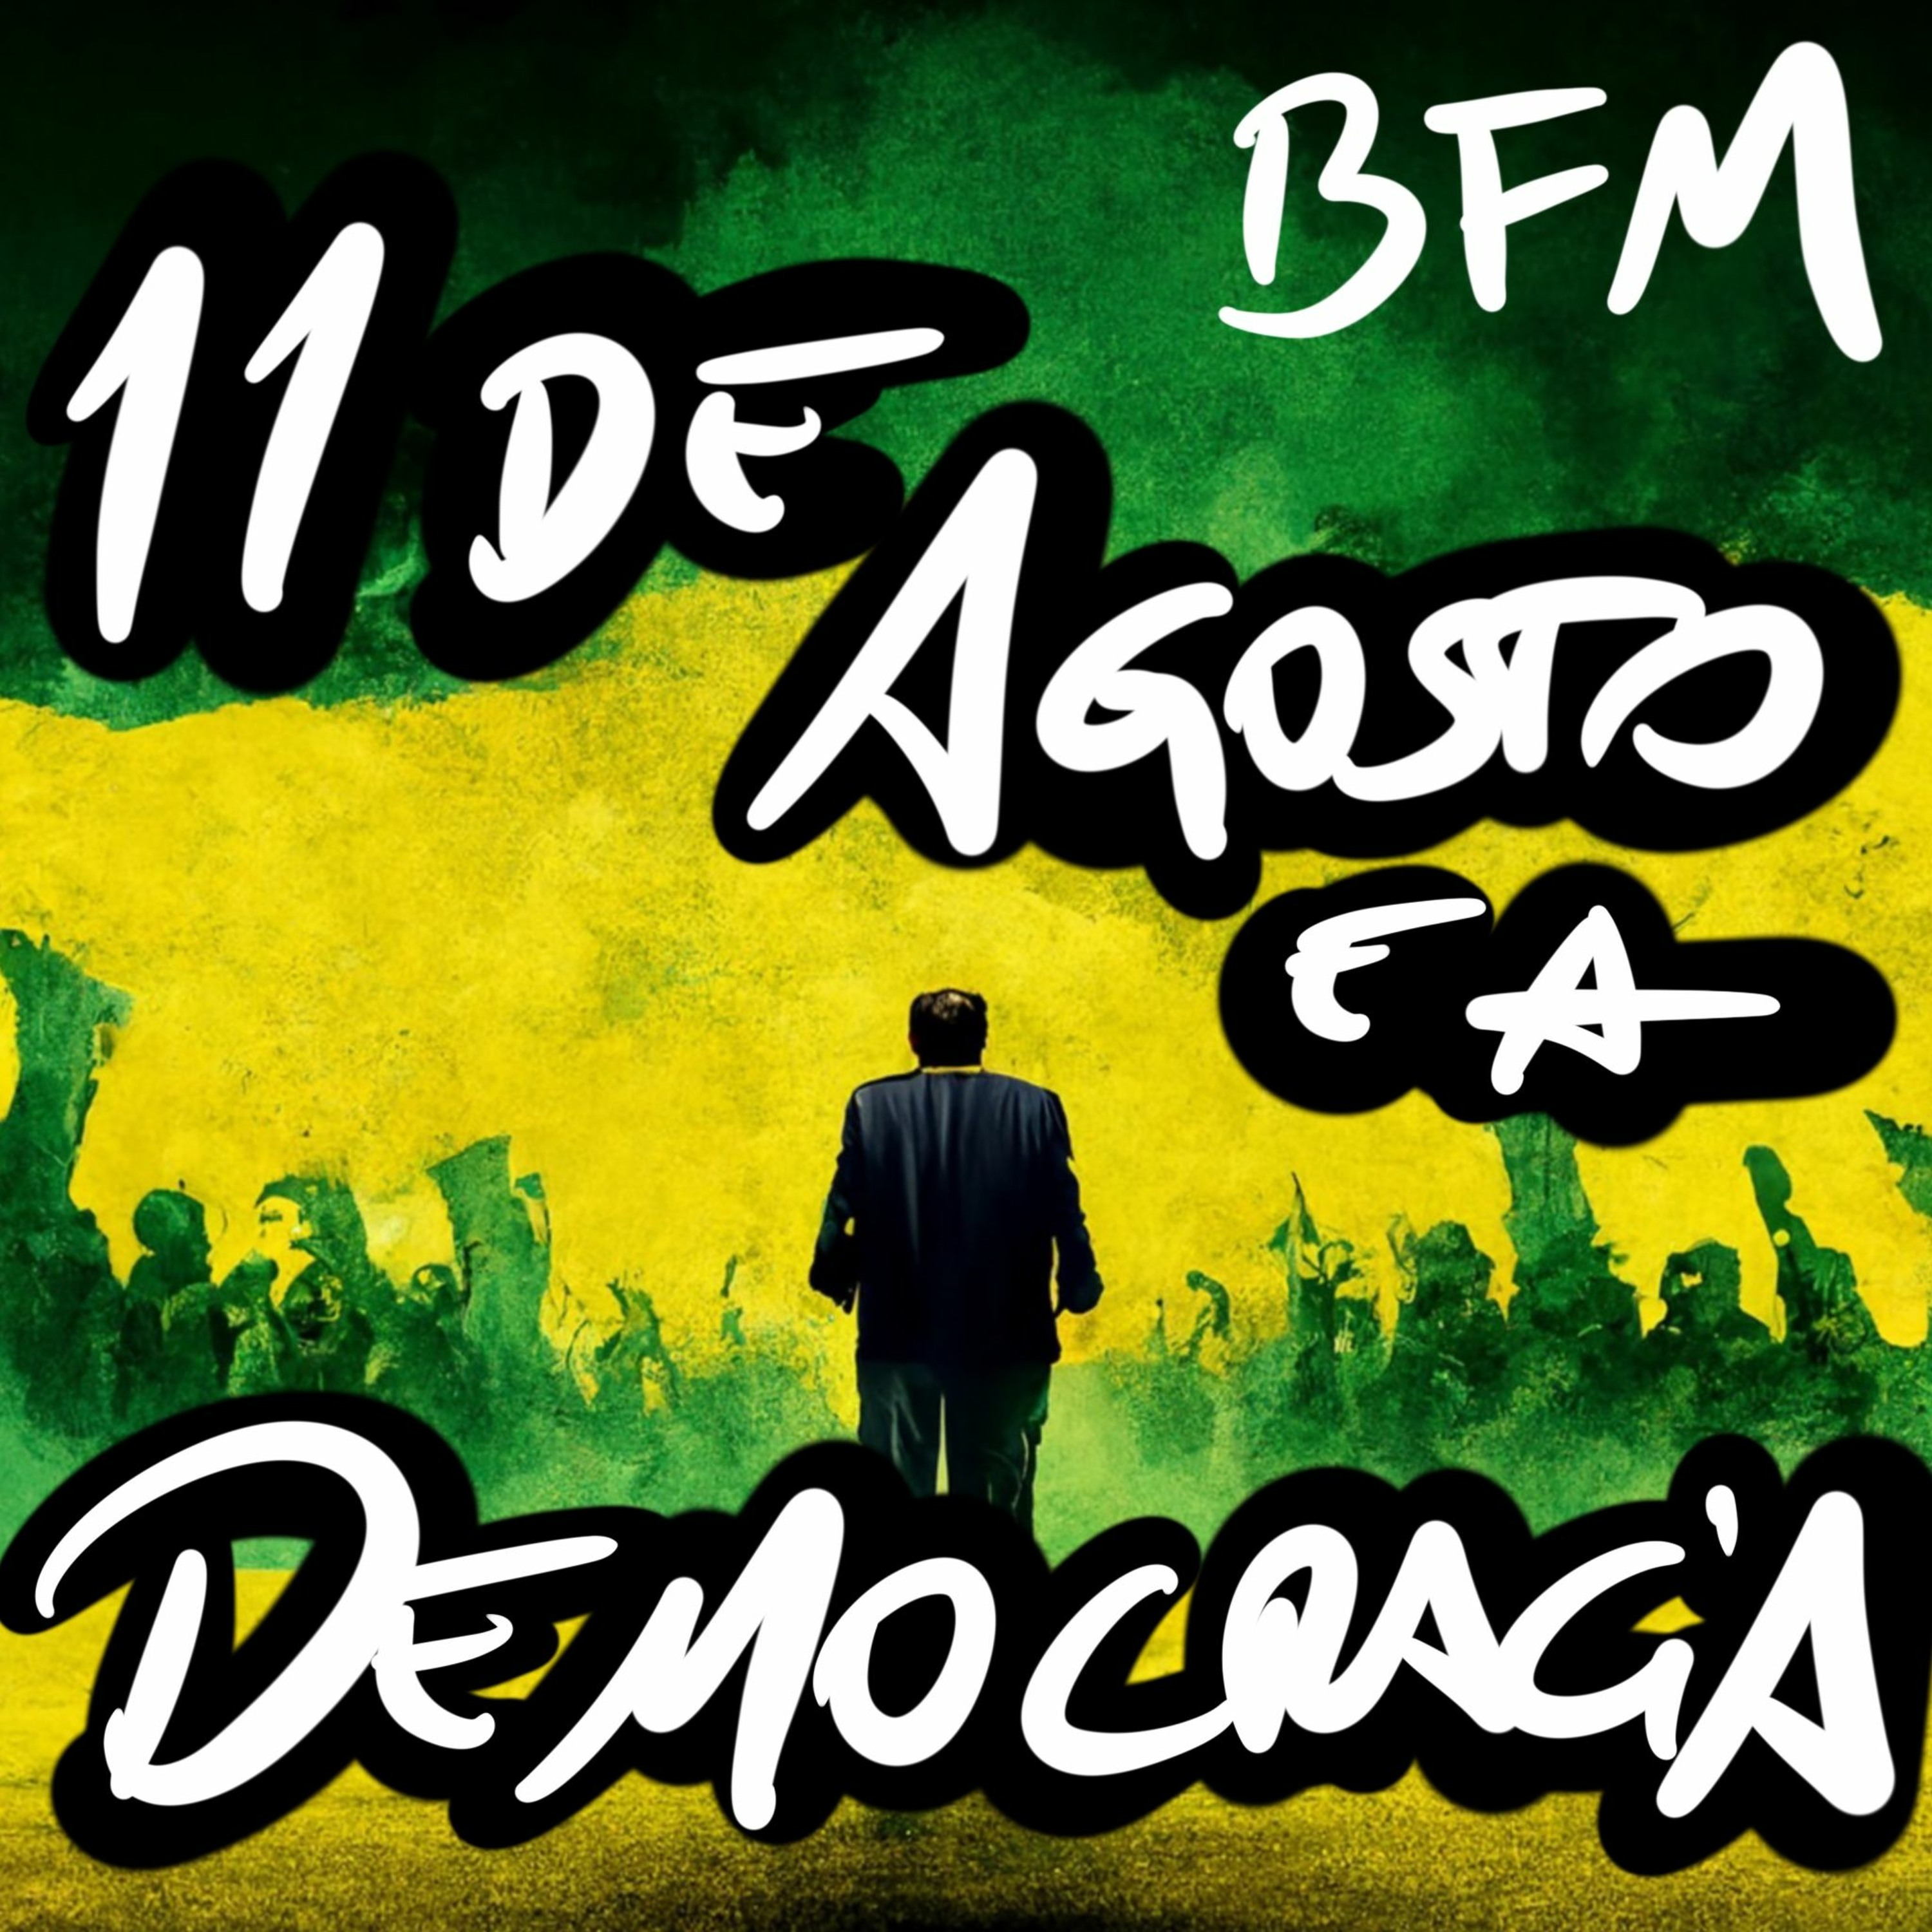 BFM 11/8/22 - 11 de Agosto e a Democracia